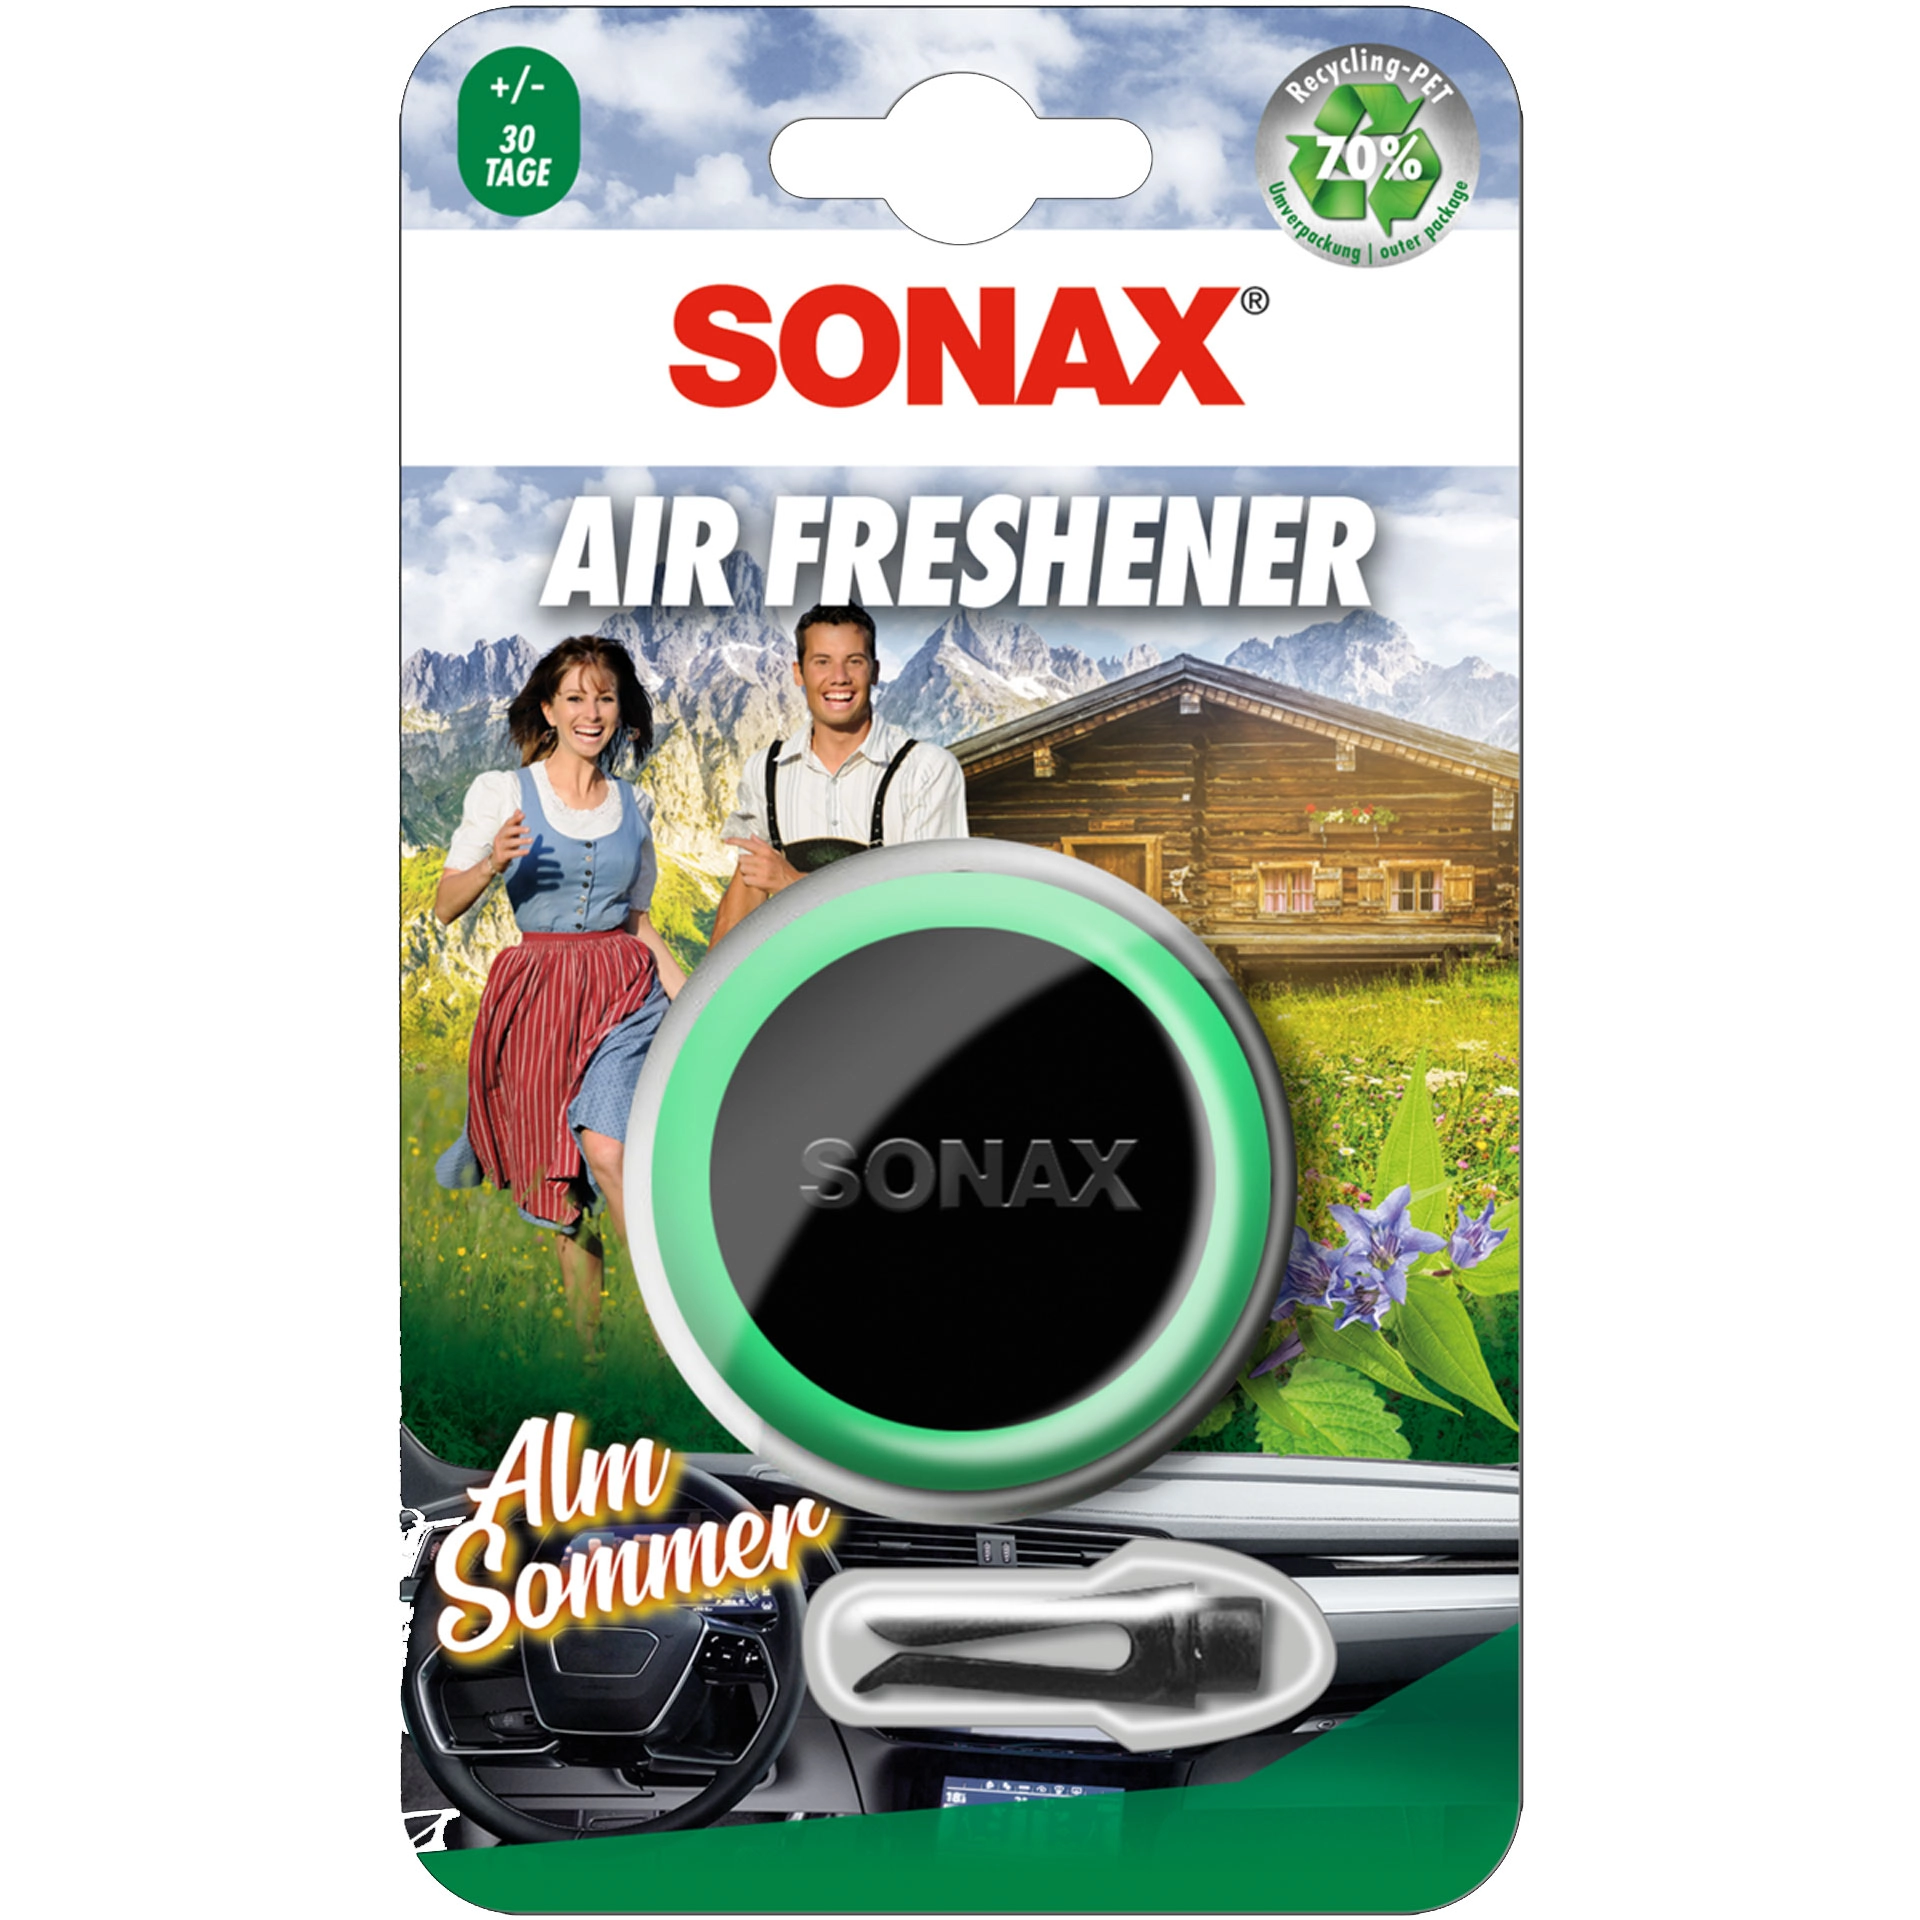 Sonax Air Freshener AlmSommer Innenraumduft 03620410